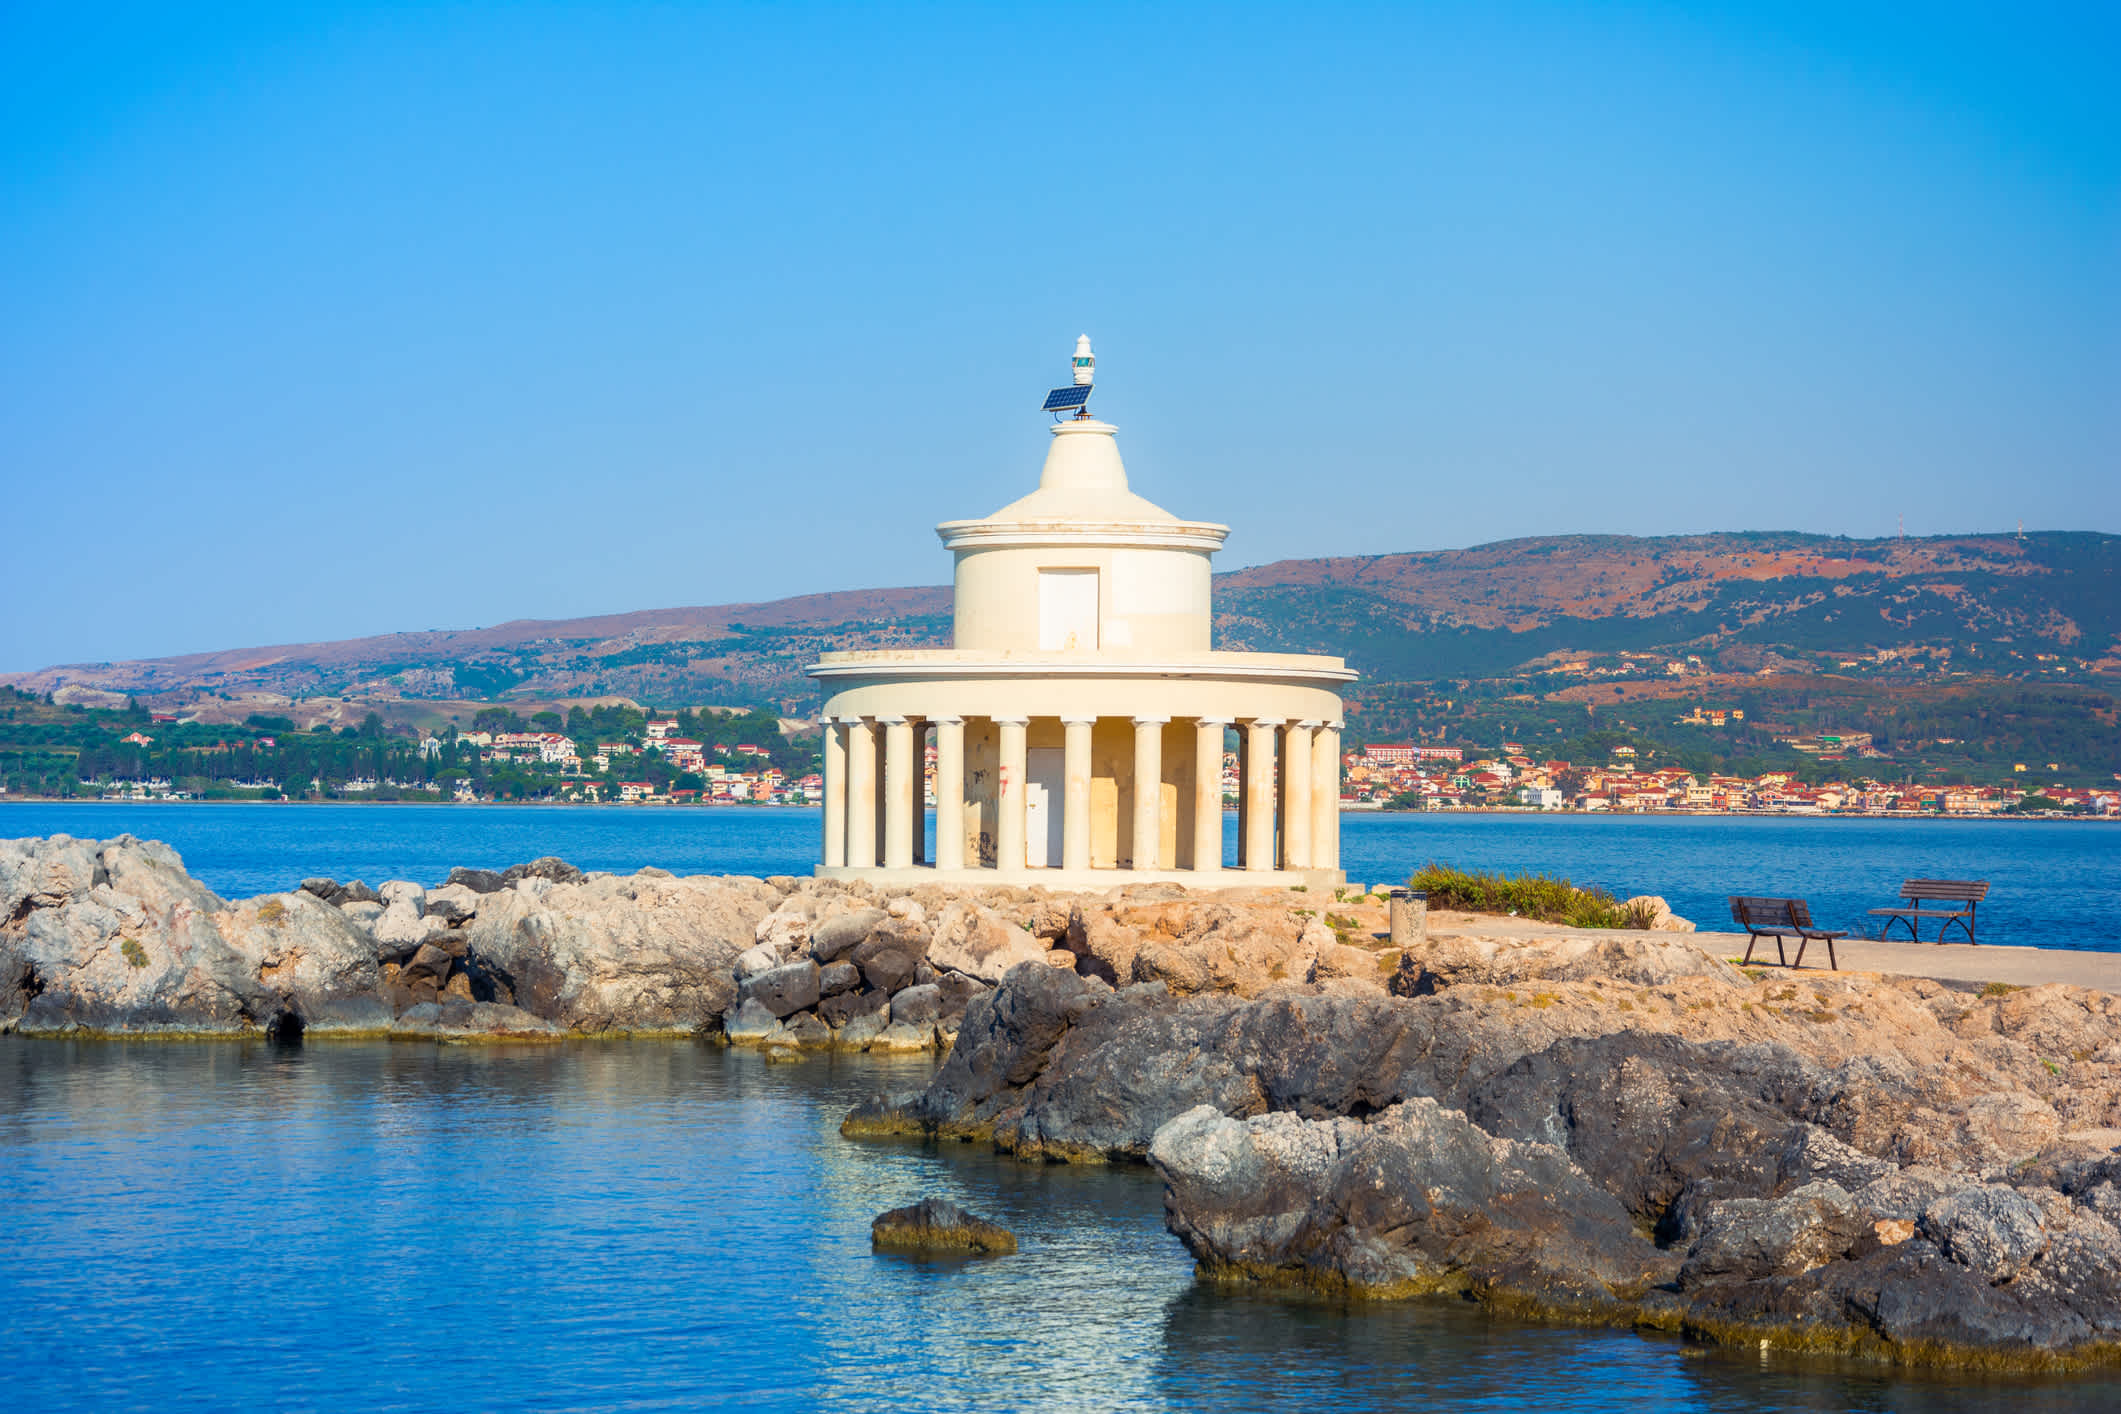 Aussicht auf den Leuchtturm von Saint Theodore auf der Insel Kefalonia, Griechenland.